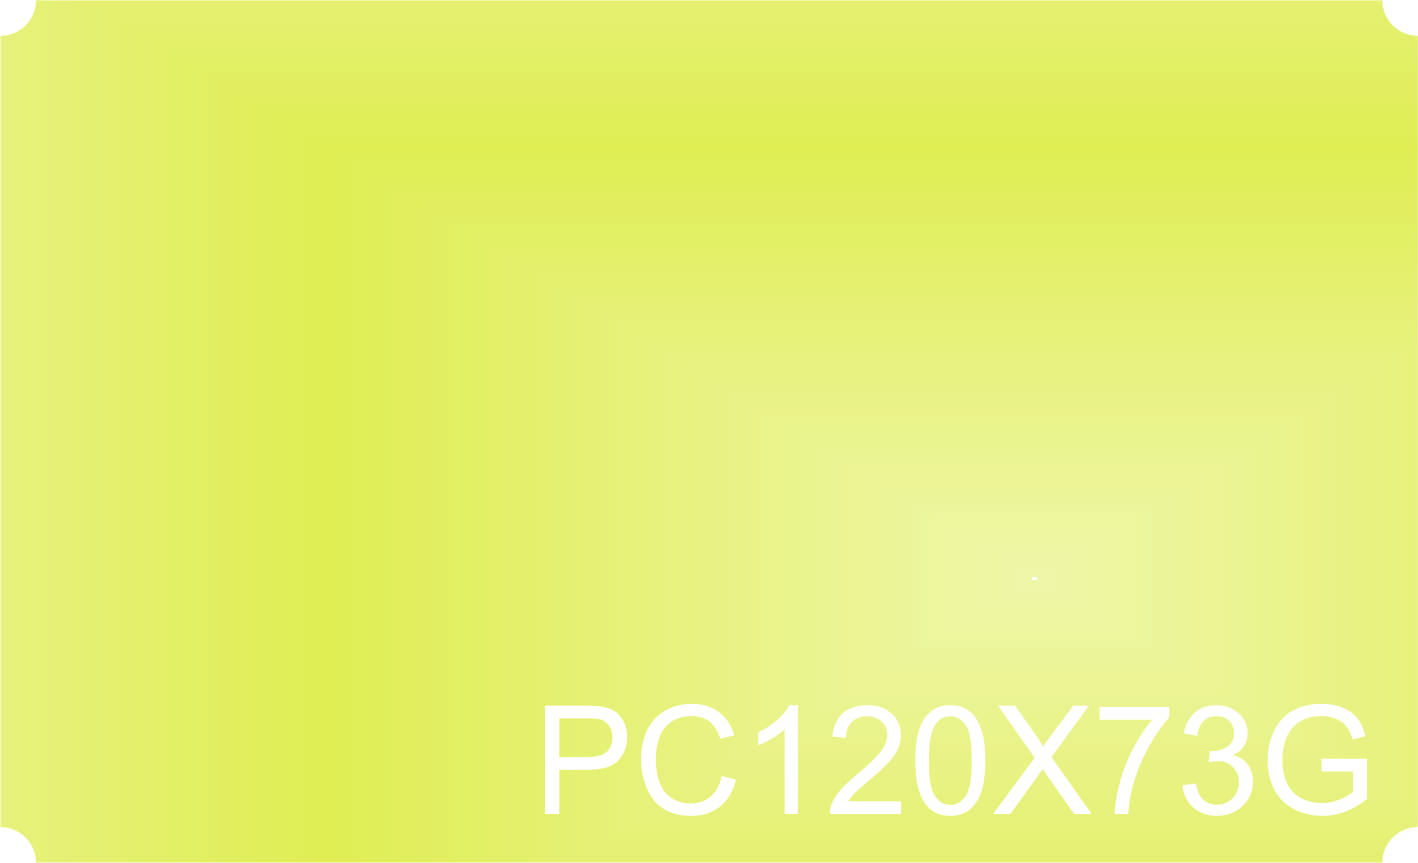 PC120X73G-TEST.jpg